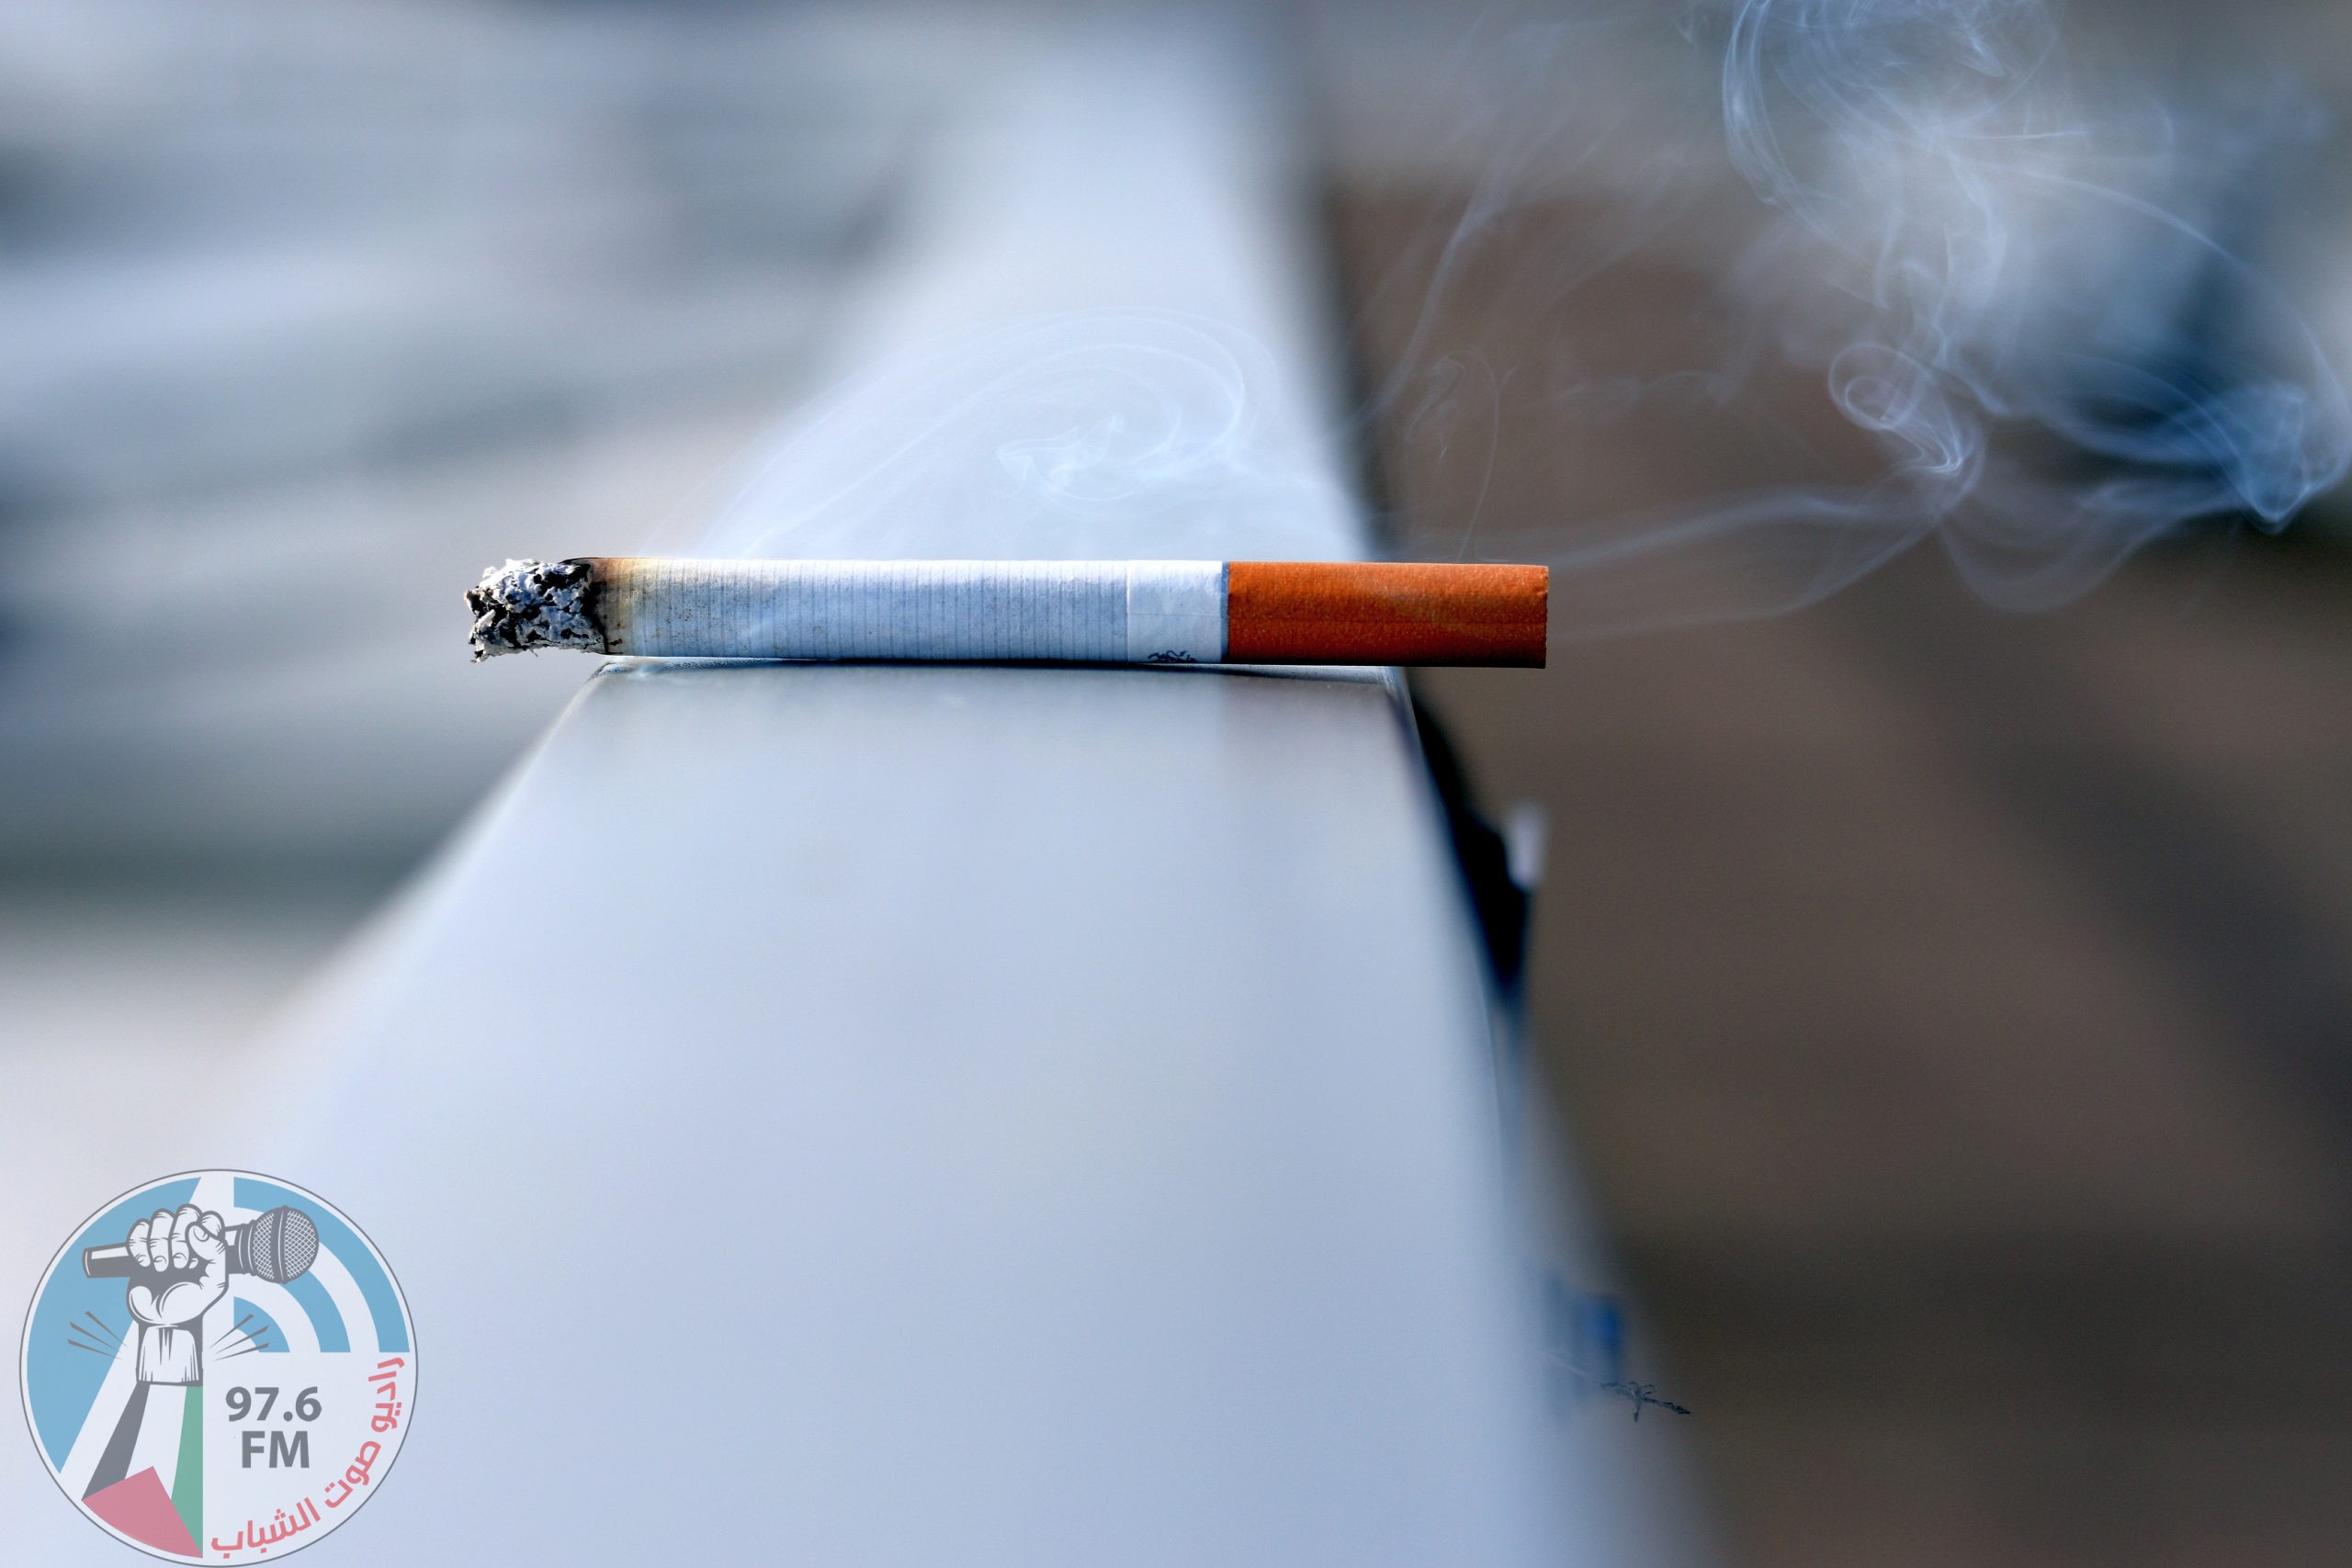 التدخين يؤدي إلى انكماش للدماغ قد يتسبب في الخرف